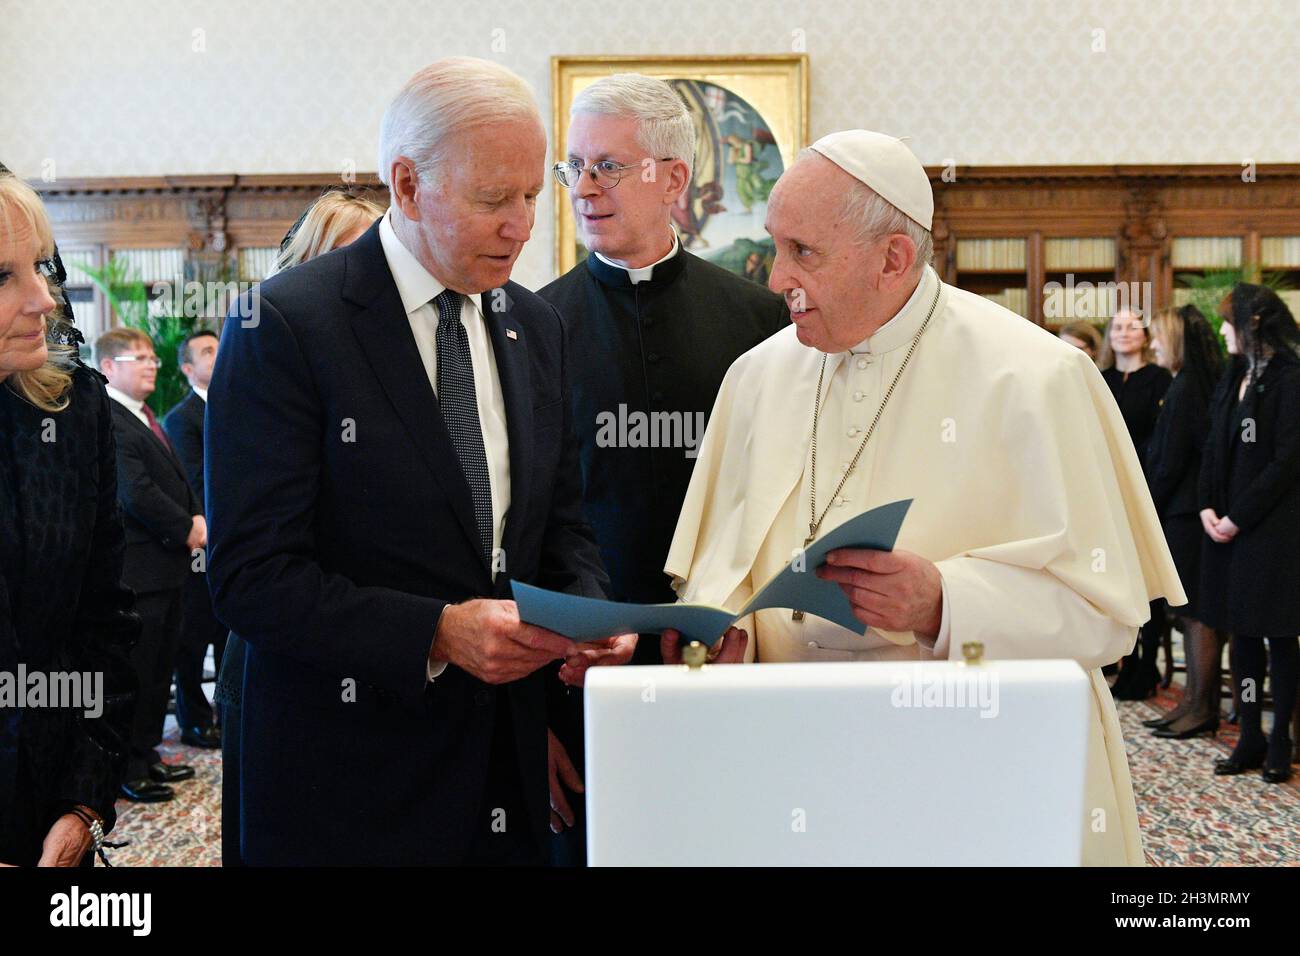 Papst Franziskus trifft den Präsidenten der Vereinigten Staaten von Amerika, Joe Biden, während einer privaten Audienz im Vatikan am 29. Oktober 2021 in Vatikanstadt, Rom, Italien. FOTO NUR FÜR REDAKTIONELLE ZWECKE!!! Stockfoto